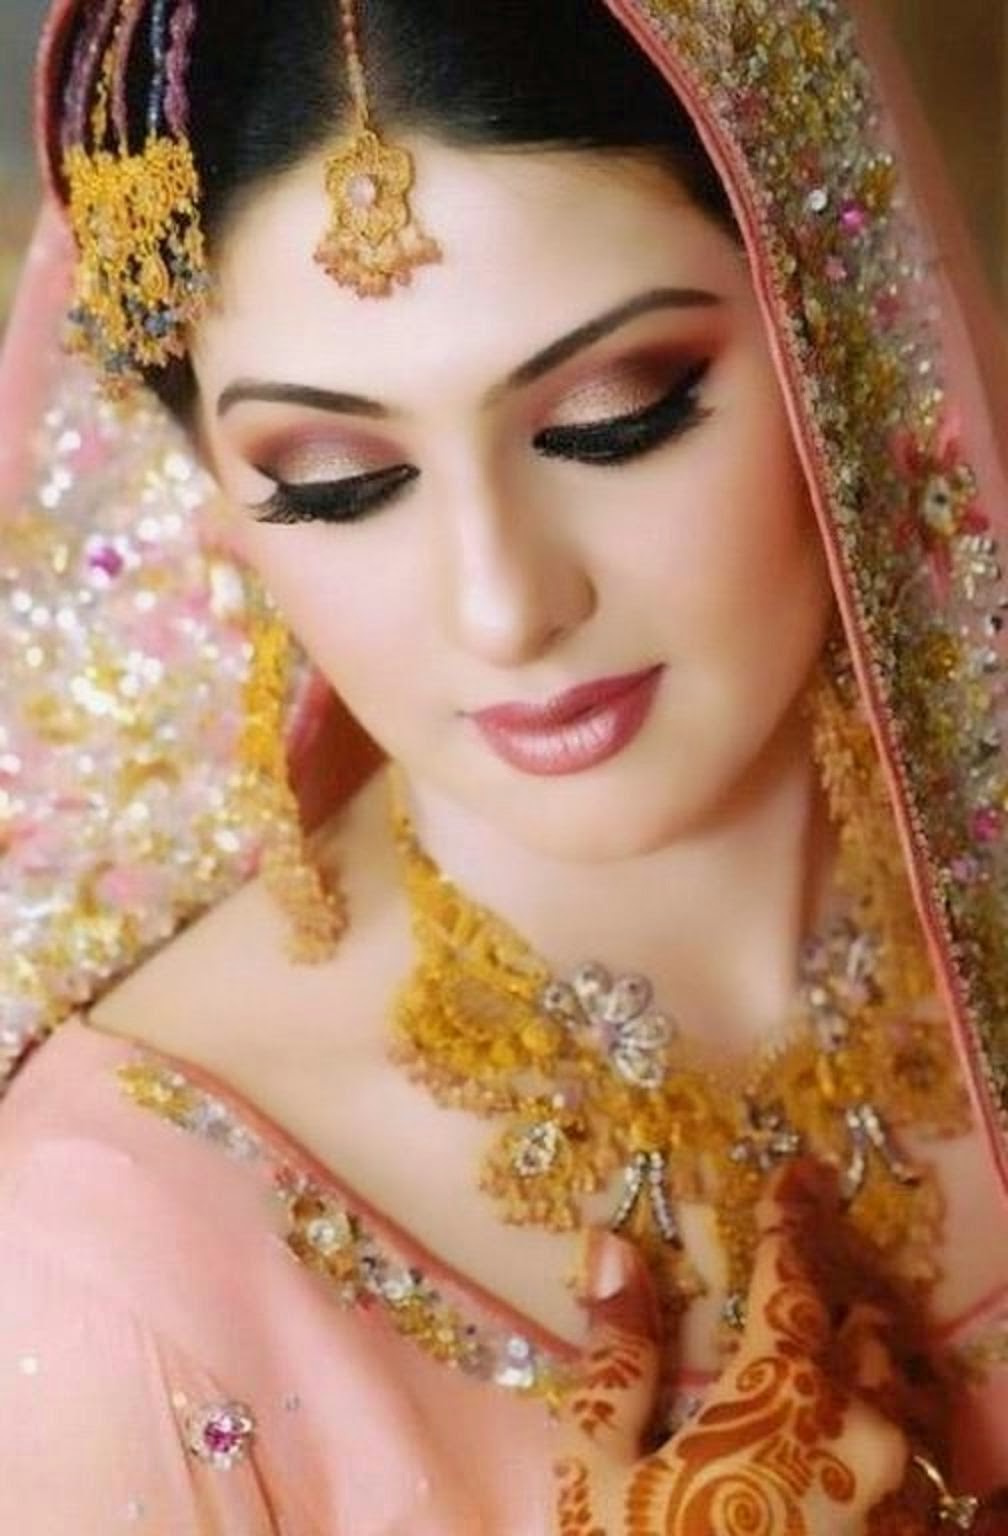 600 Free Indian Bride  Bride Images  Pixabay